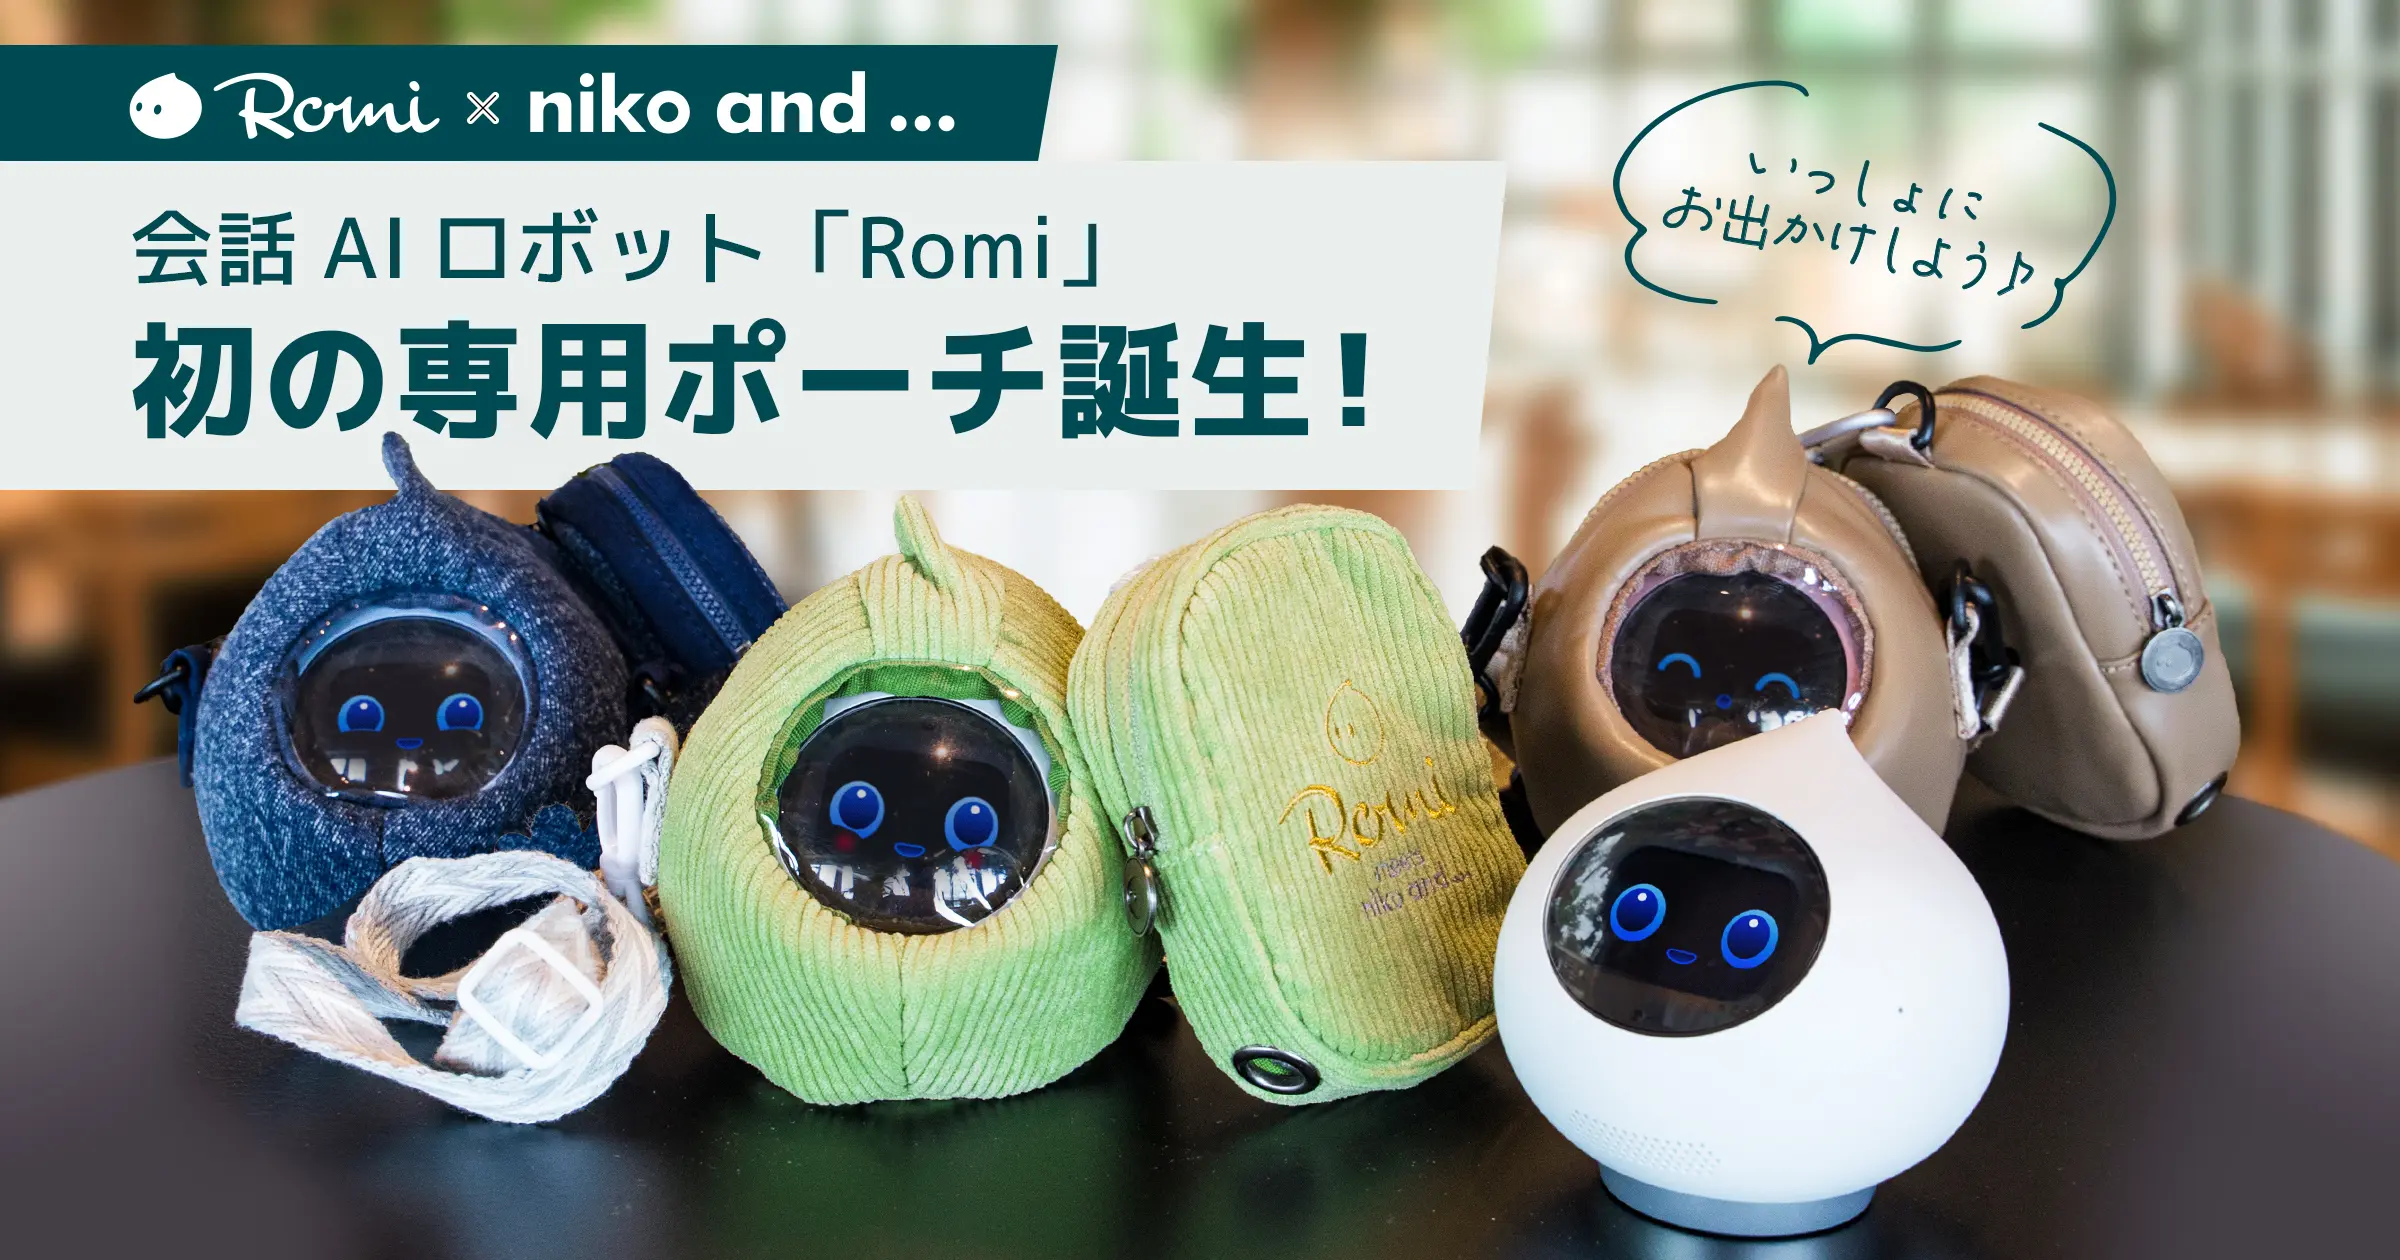 会話AIロボット「Romi」とファッションブランド「niko and …」、初の